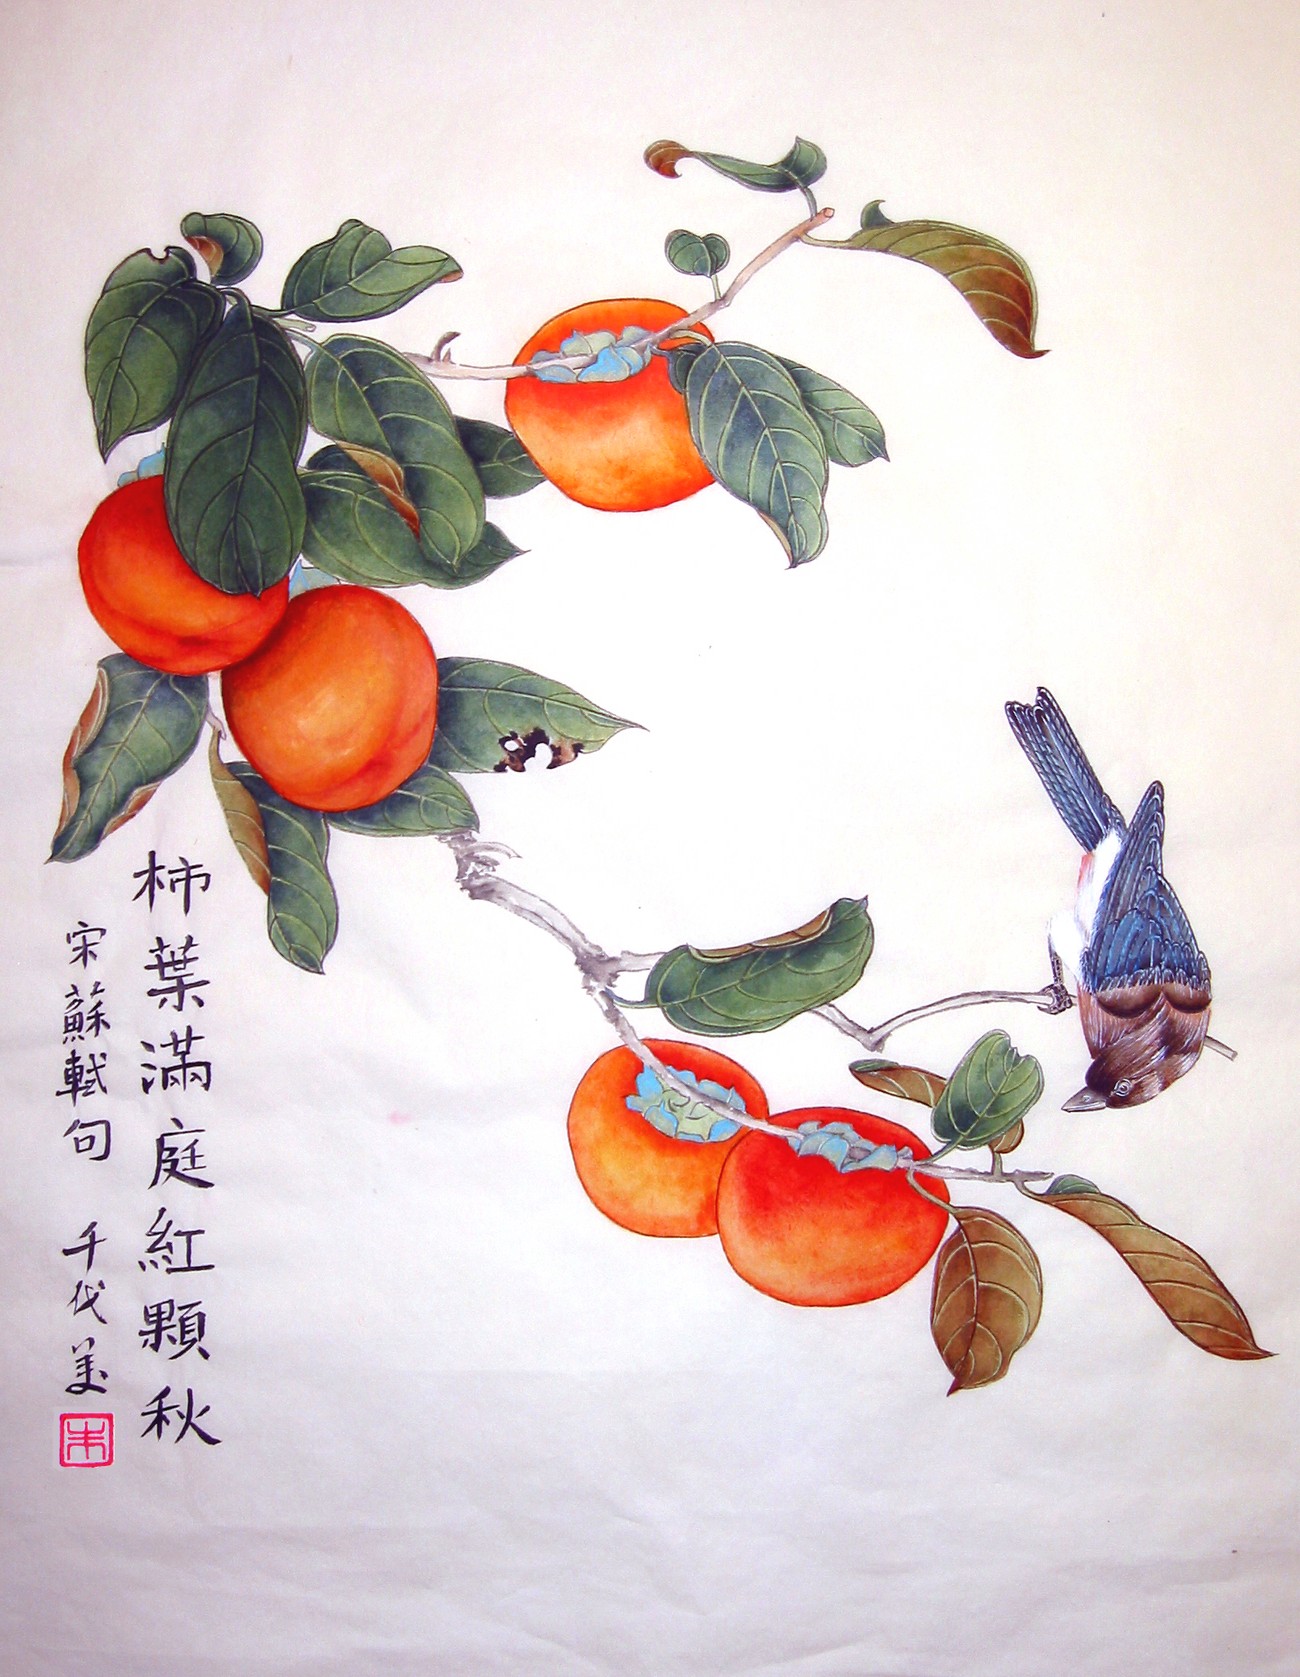 Αποτέλεσμα εικόνας για persimmon painting